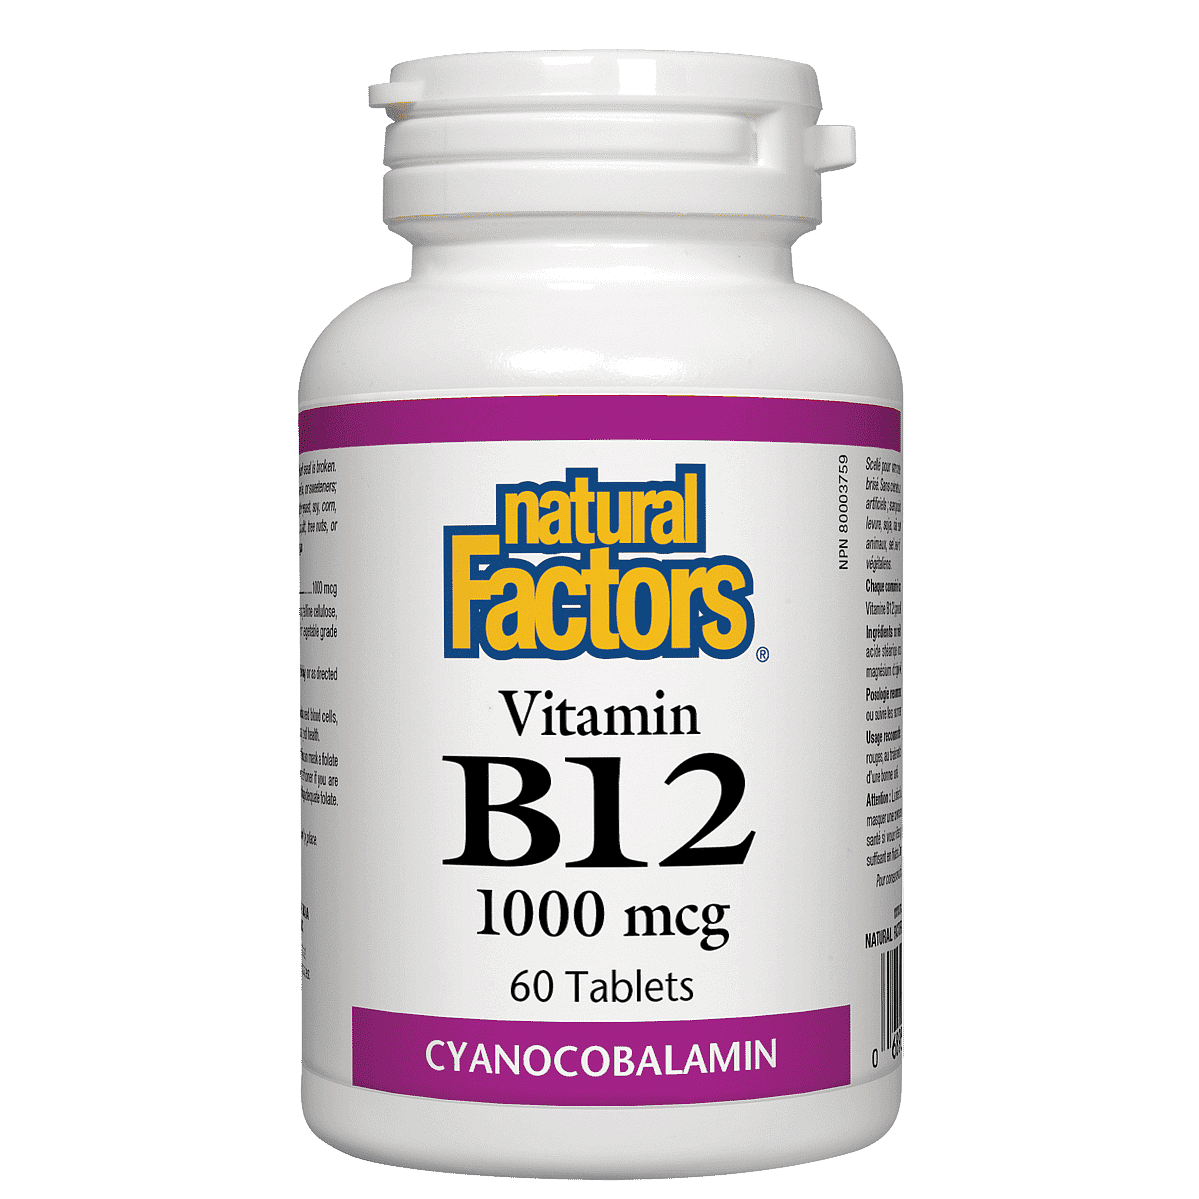 Natural Factors B12 - 1000 mcg 60 Tablets